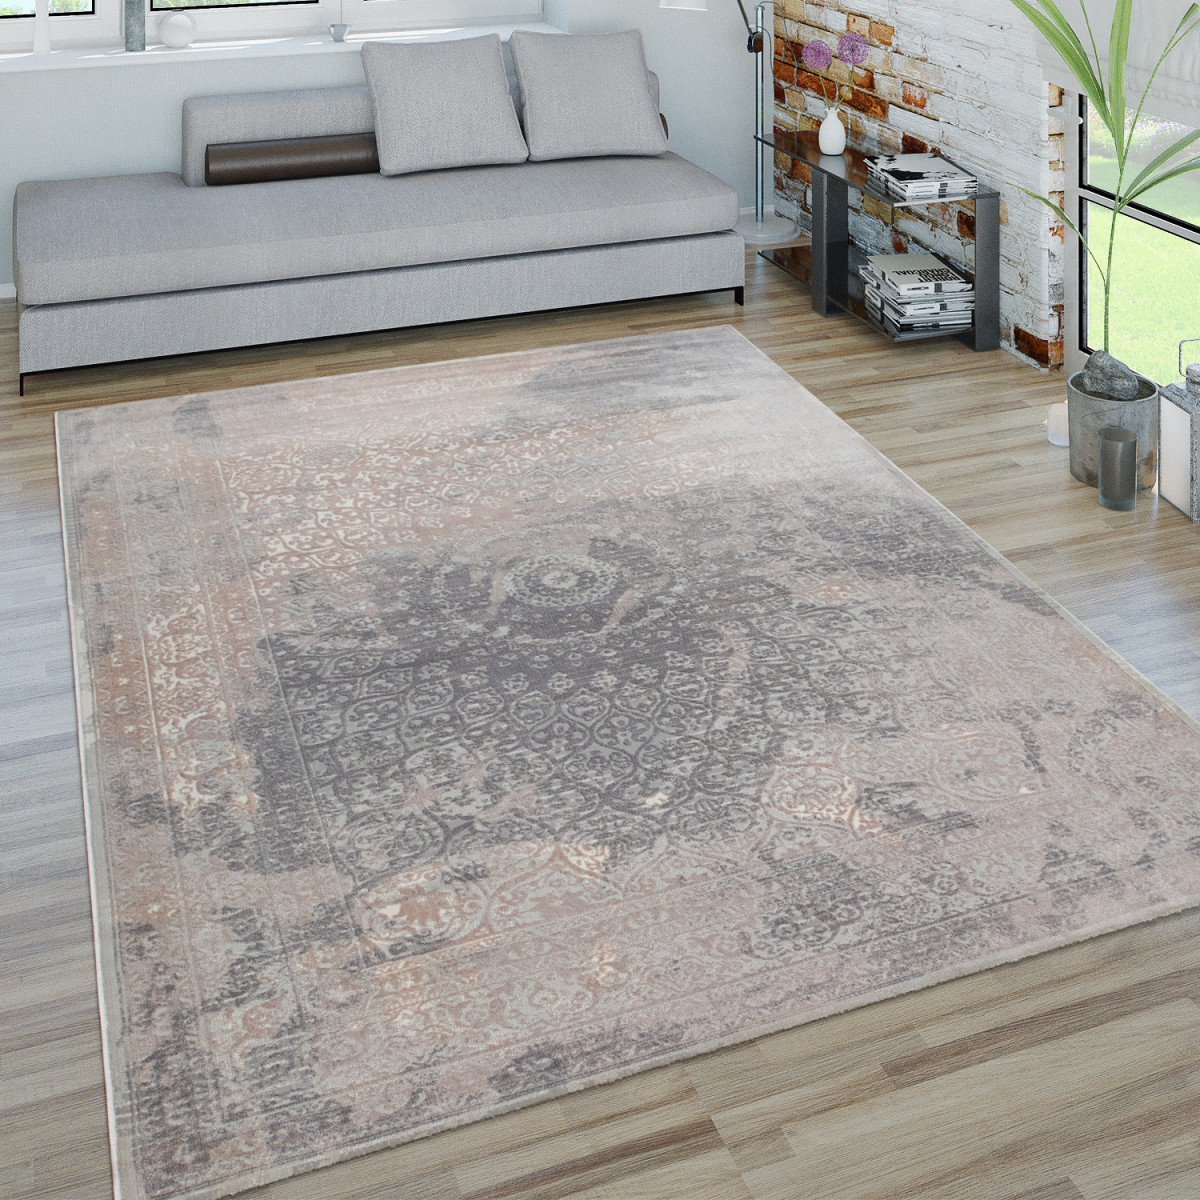 Teppich Für Wohnzimmer Kurzflorteppich Orientoptik 3Dlook In Grau von Grauer Wohnzimmer Teppich Bild